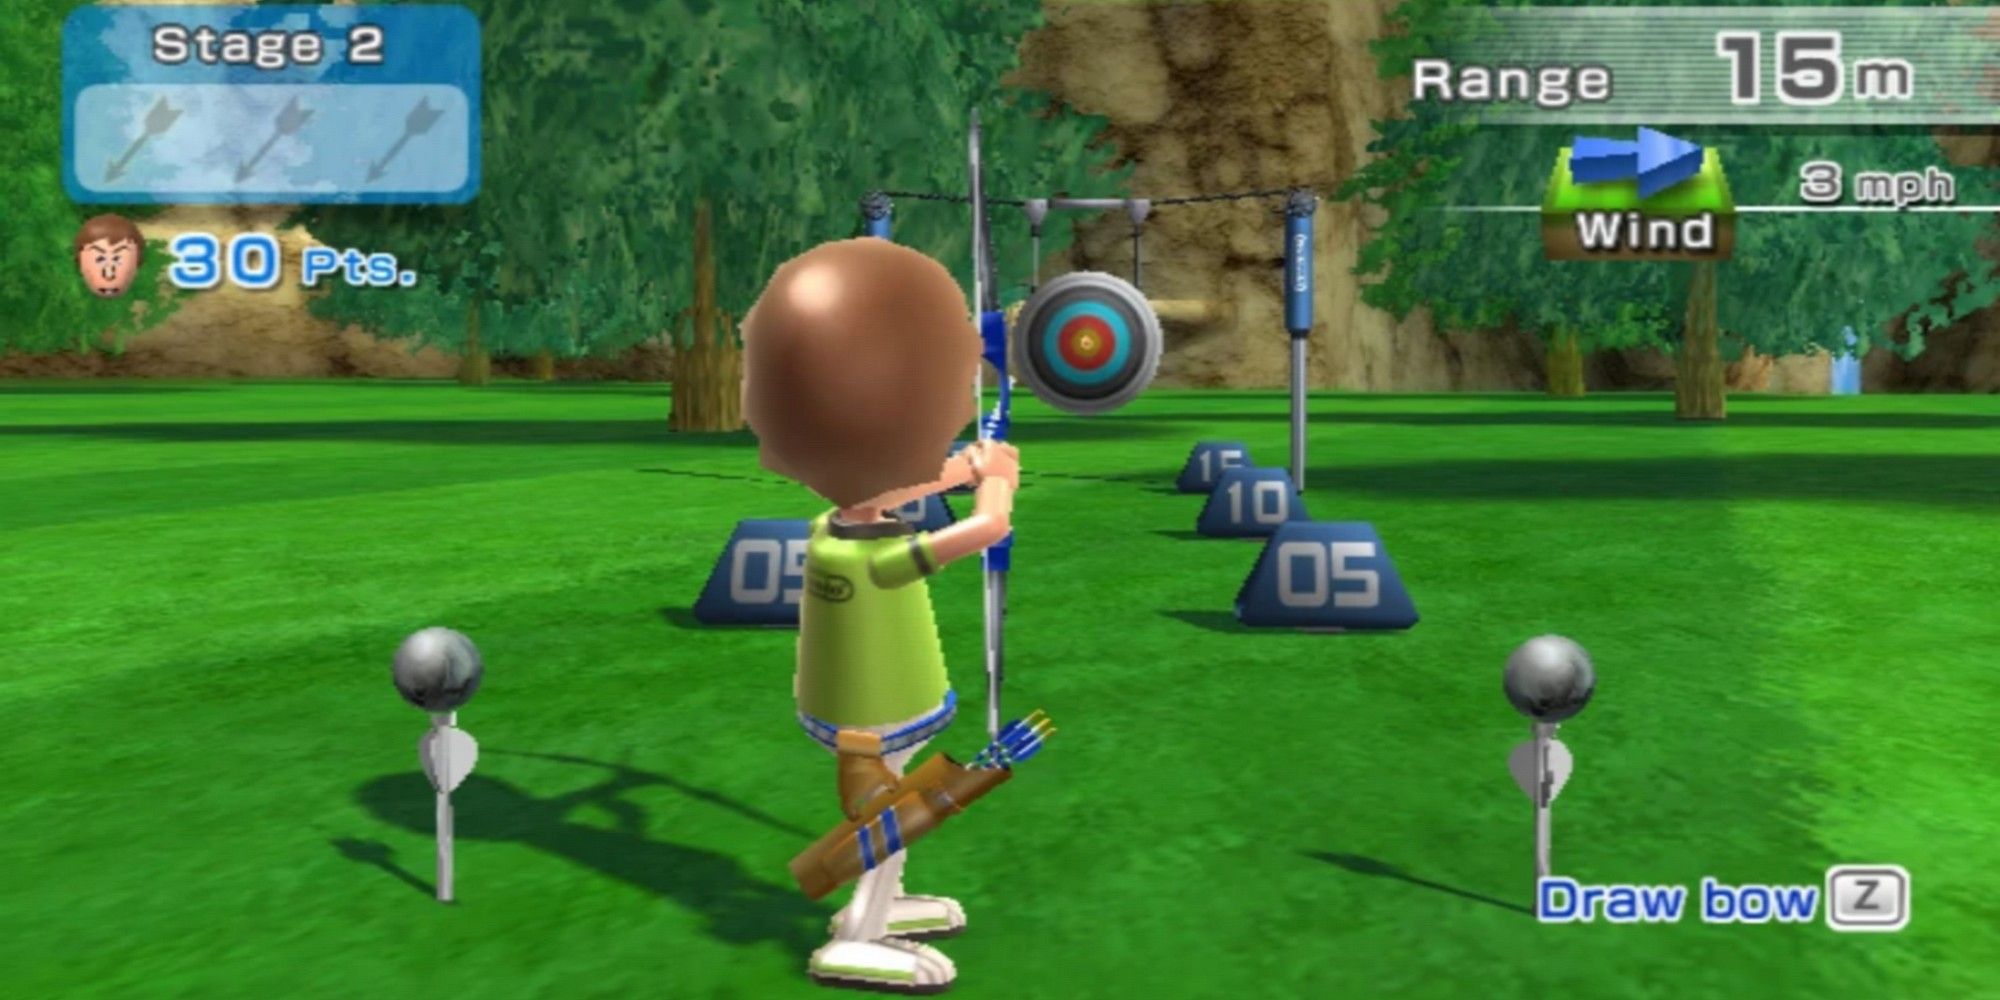 Wii Sports Resort Achery Target Practice Mii